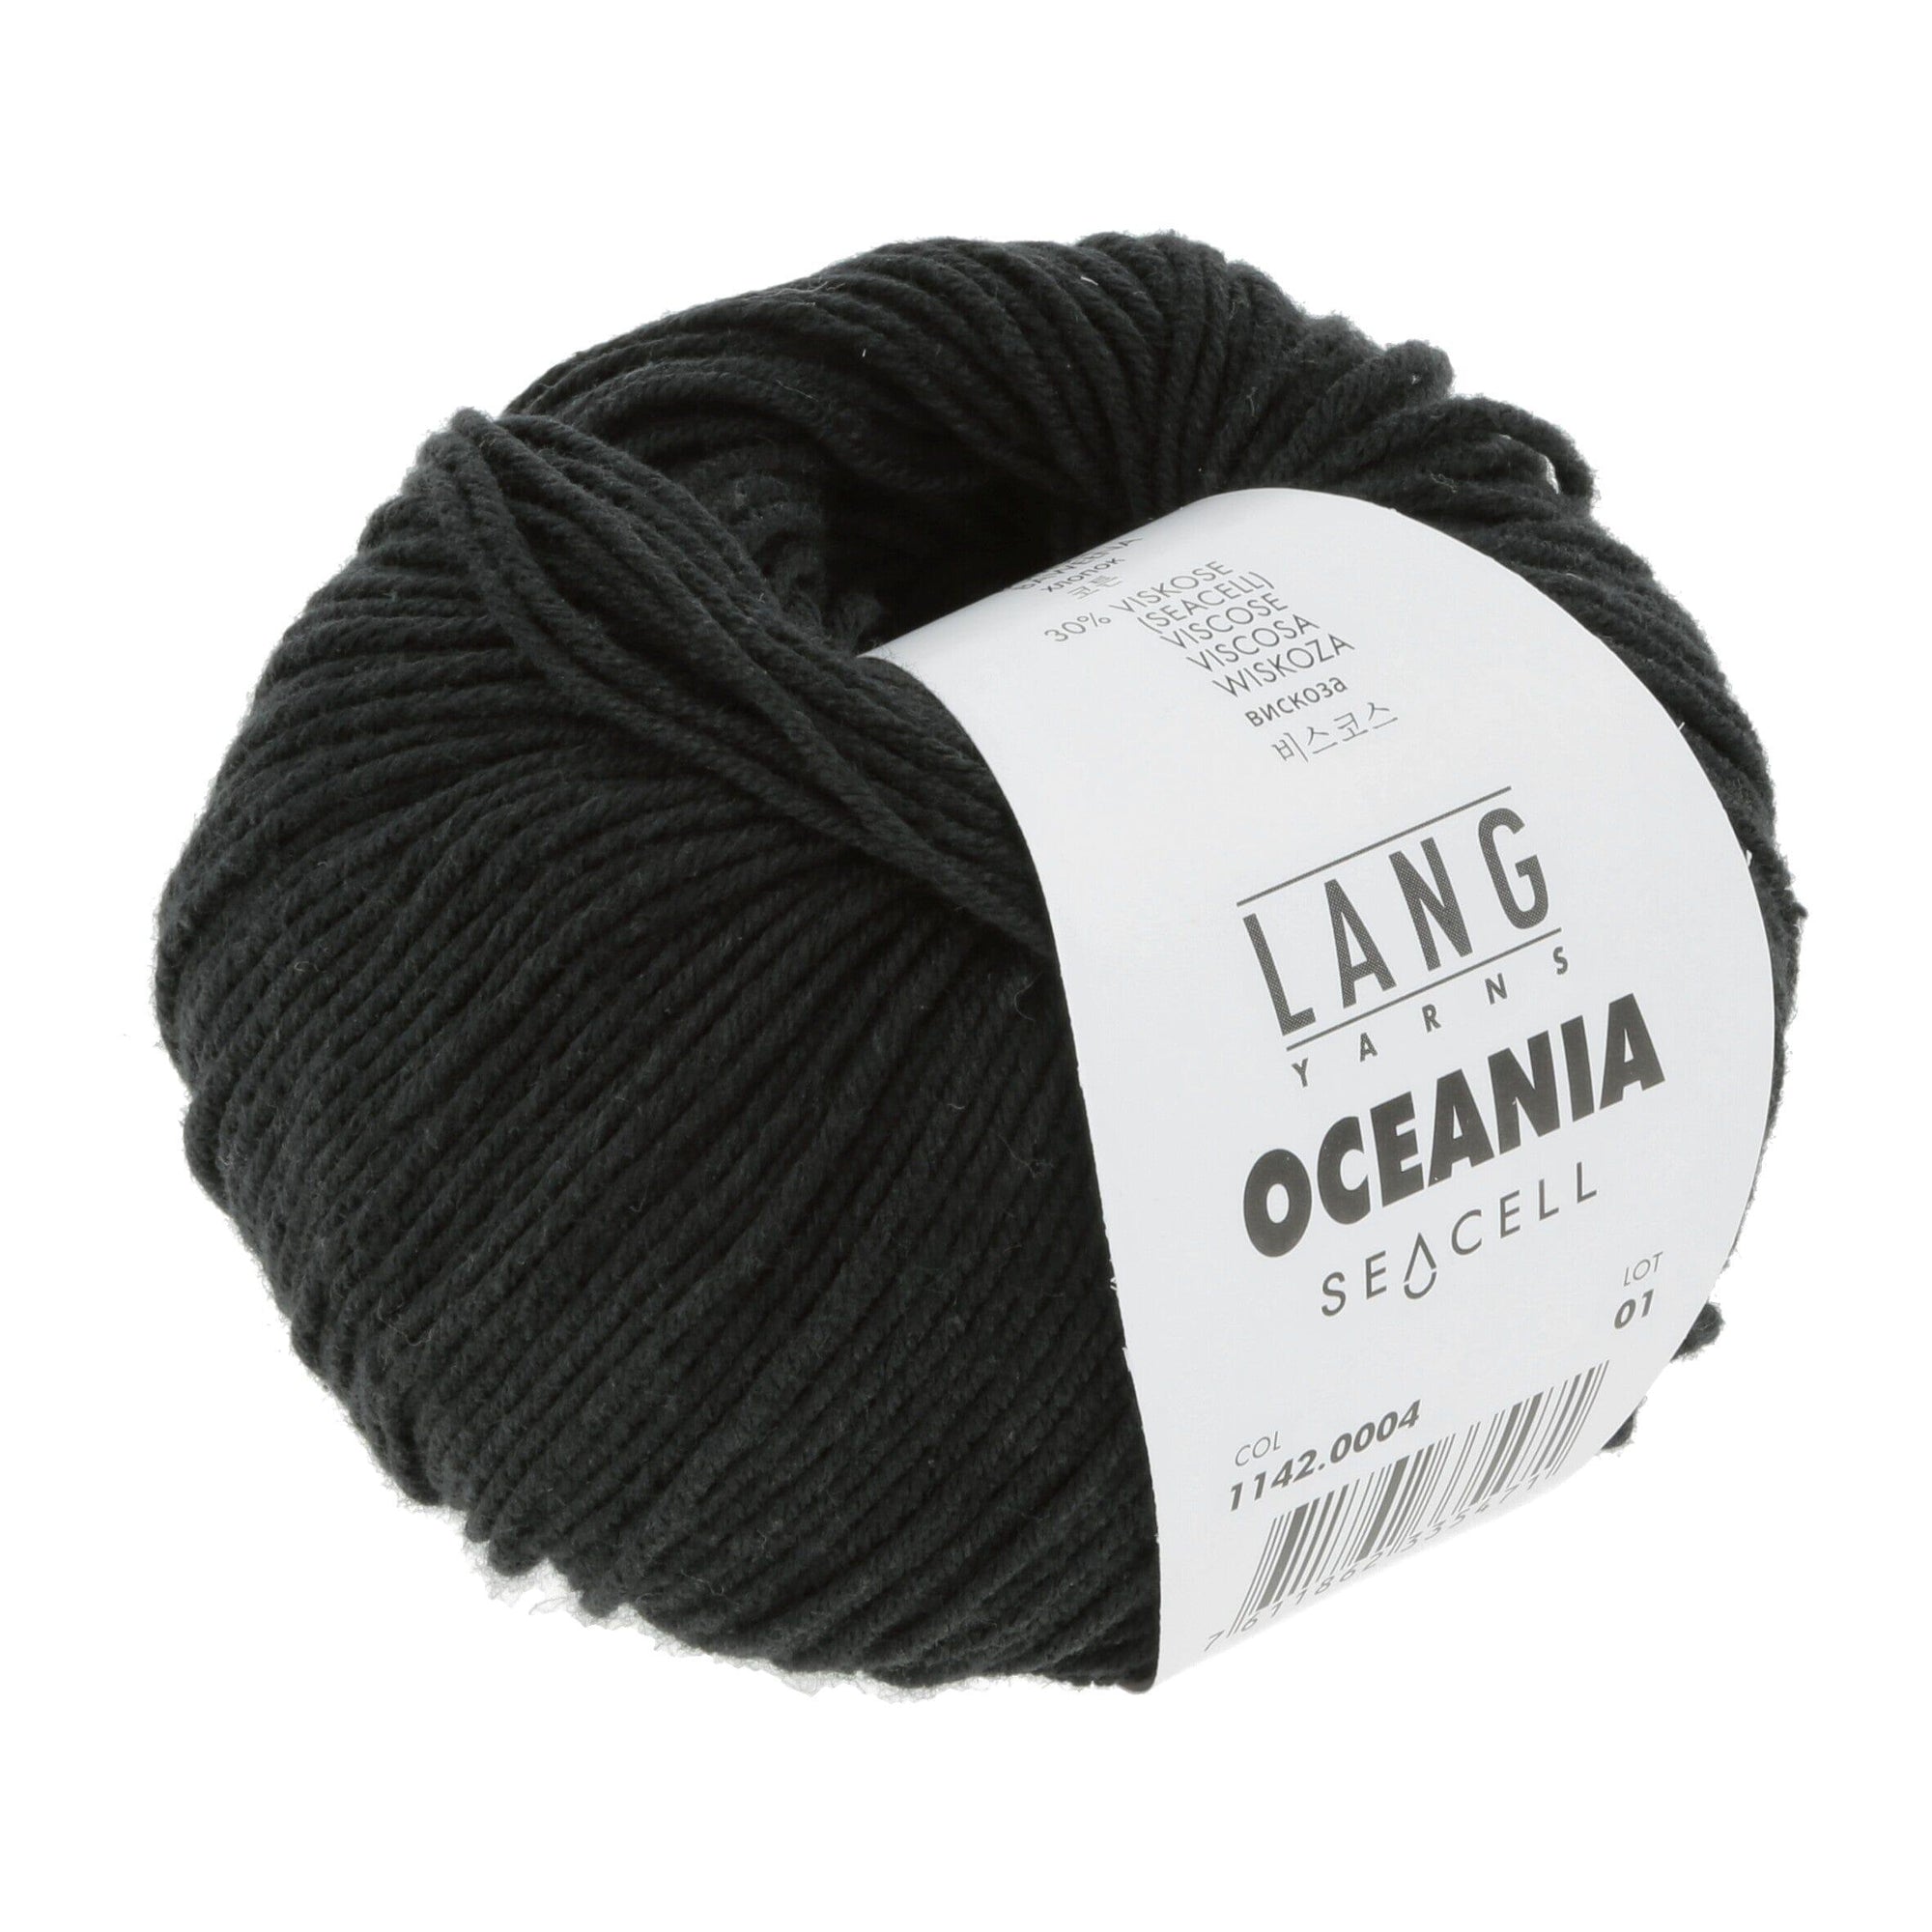 Lang Oceania